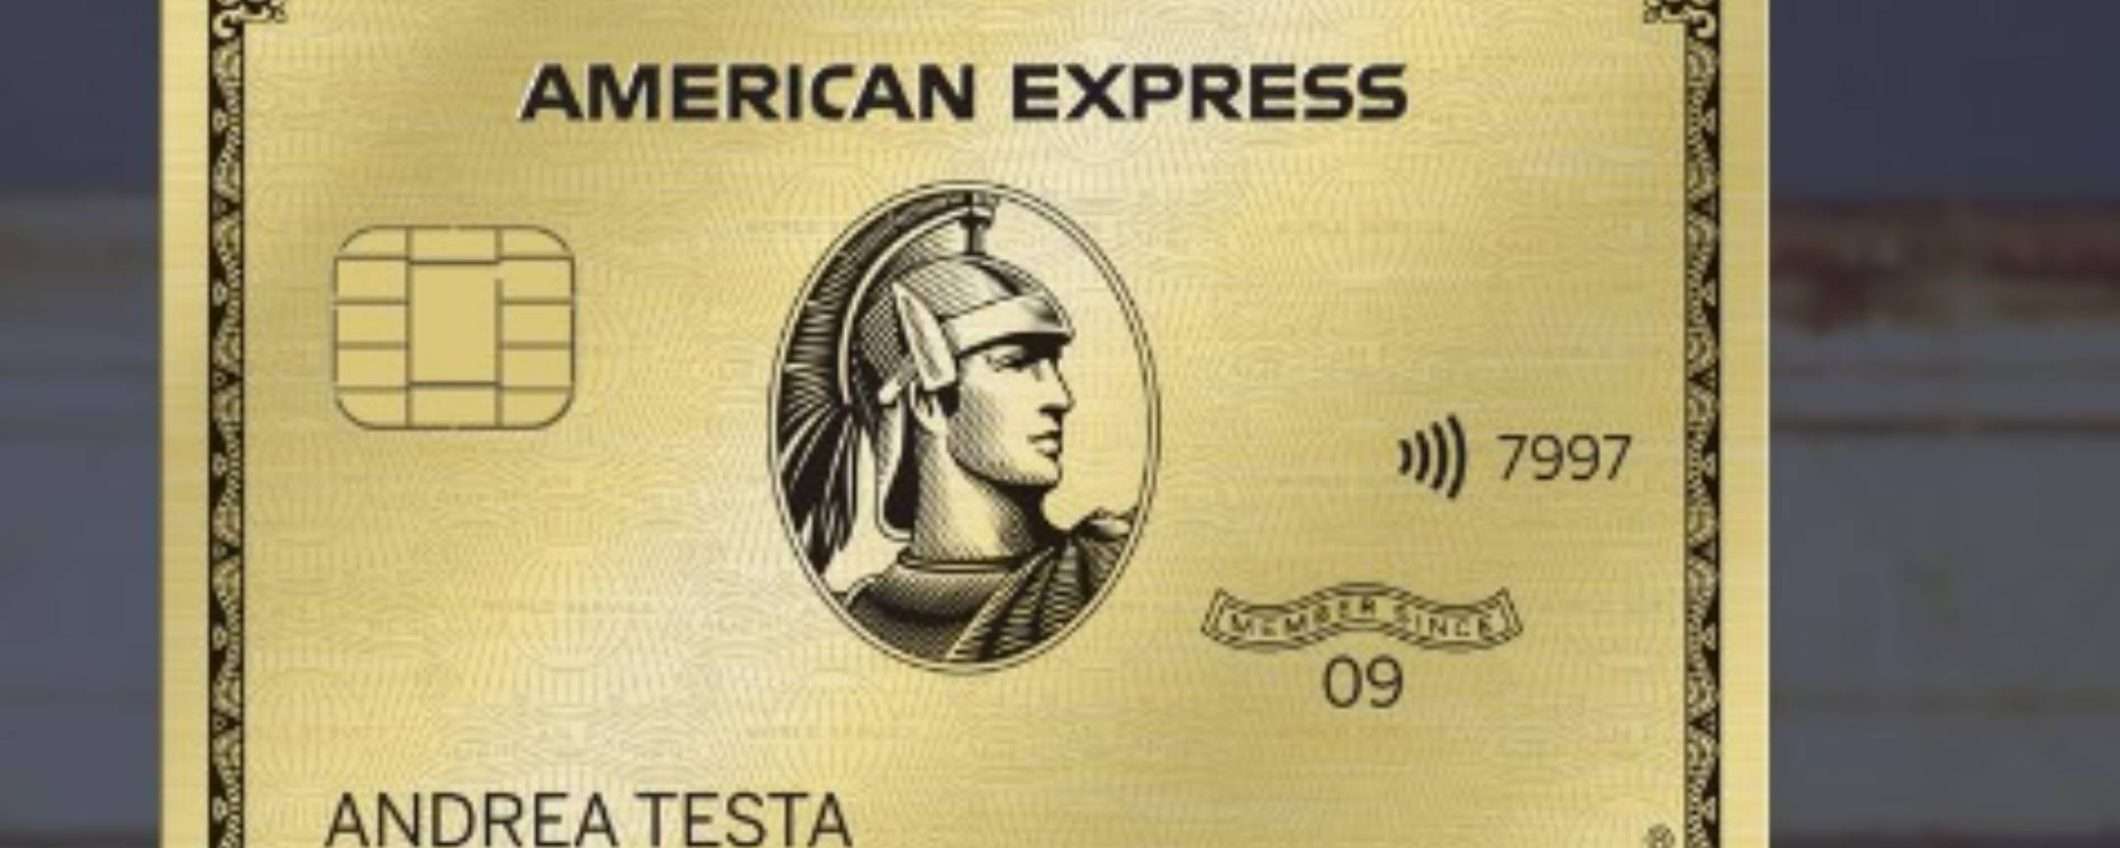 Carta Oro American Express: 200€ di sconto spendendo 10.000€ in 12 mesi